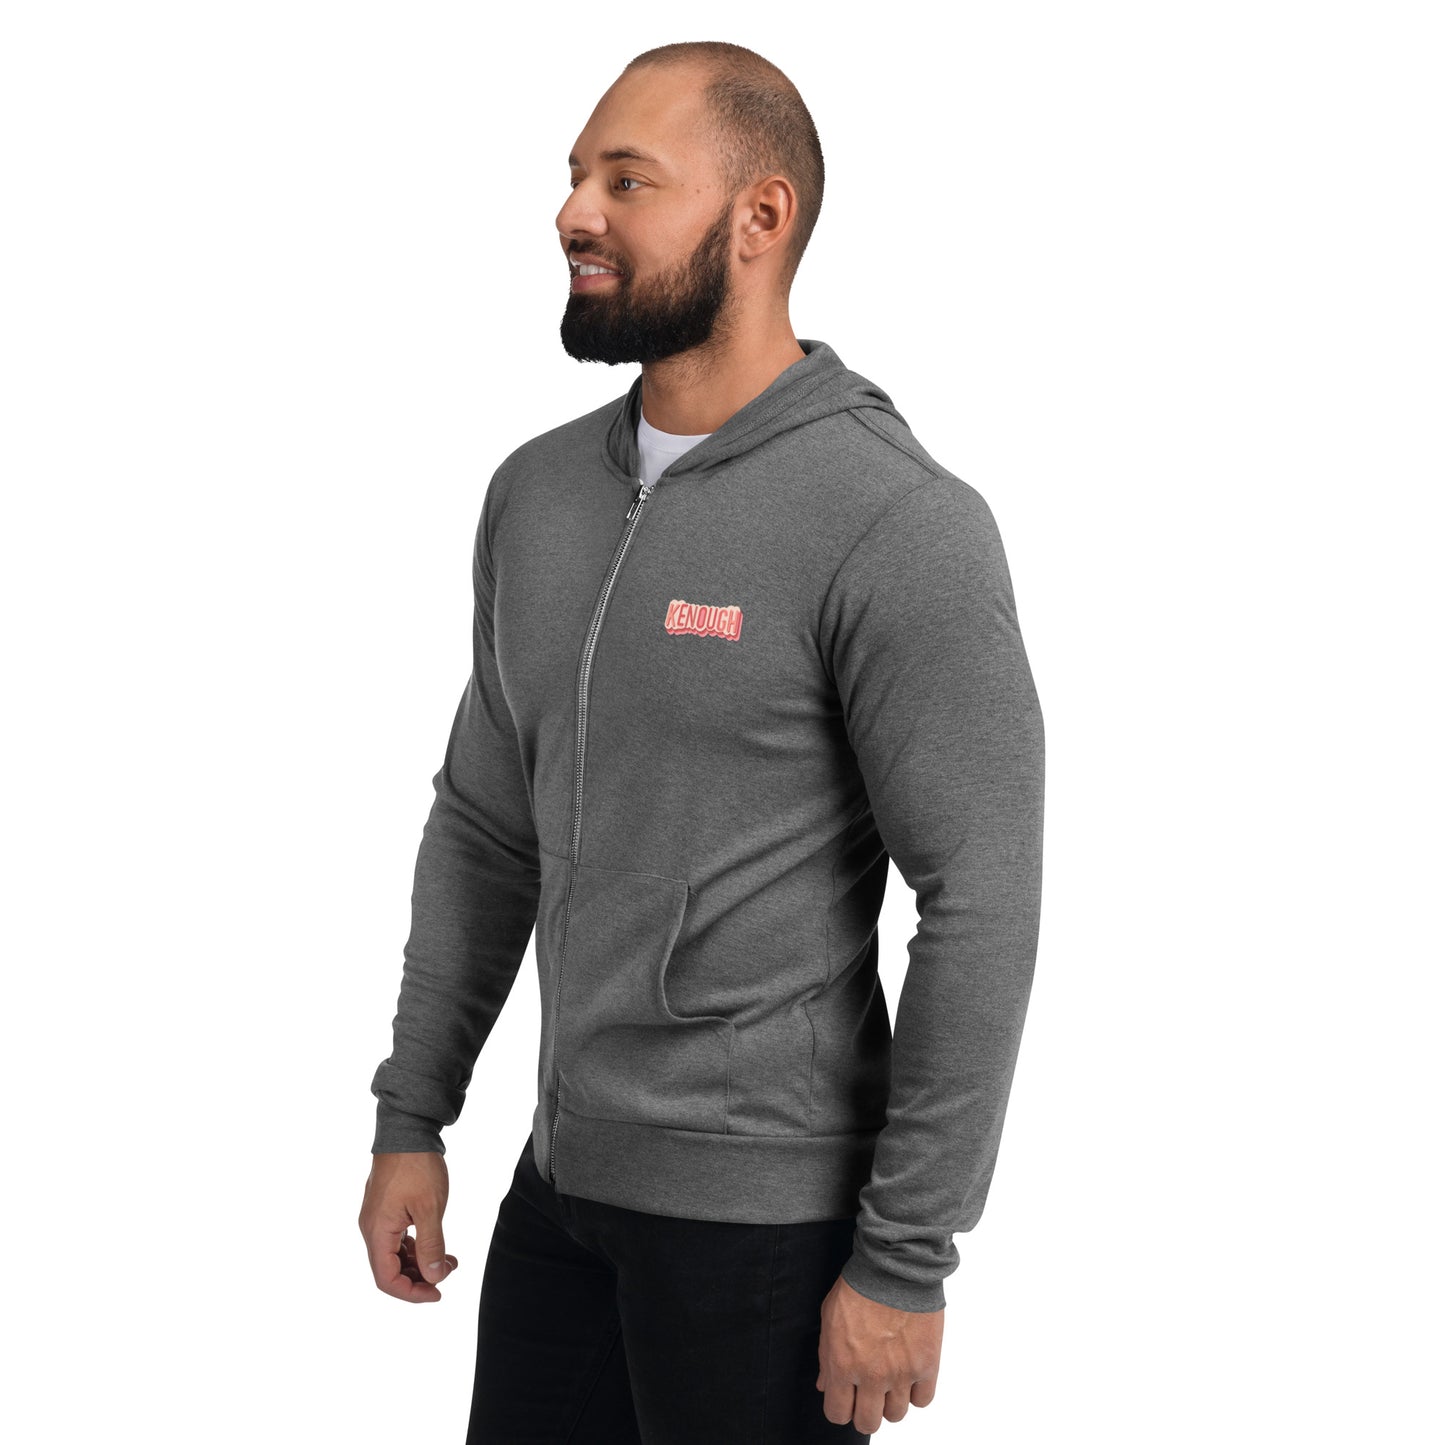 Kenough Unisex zip hoodie